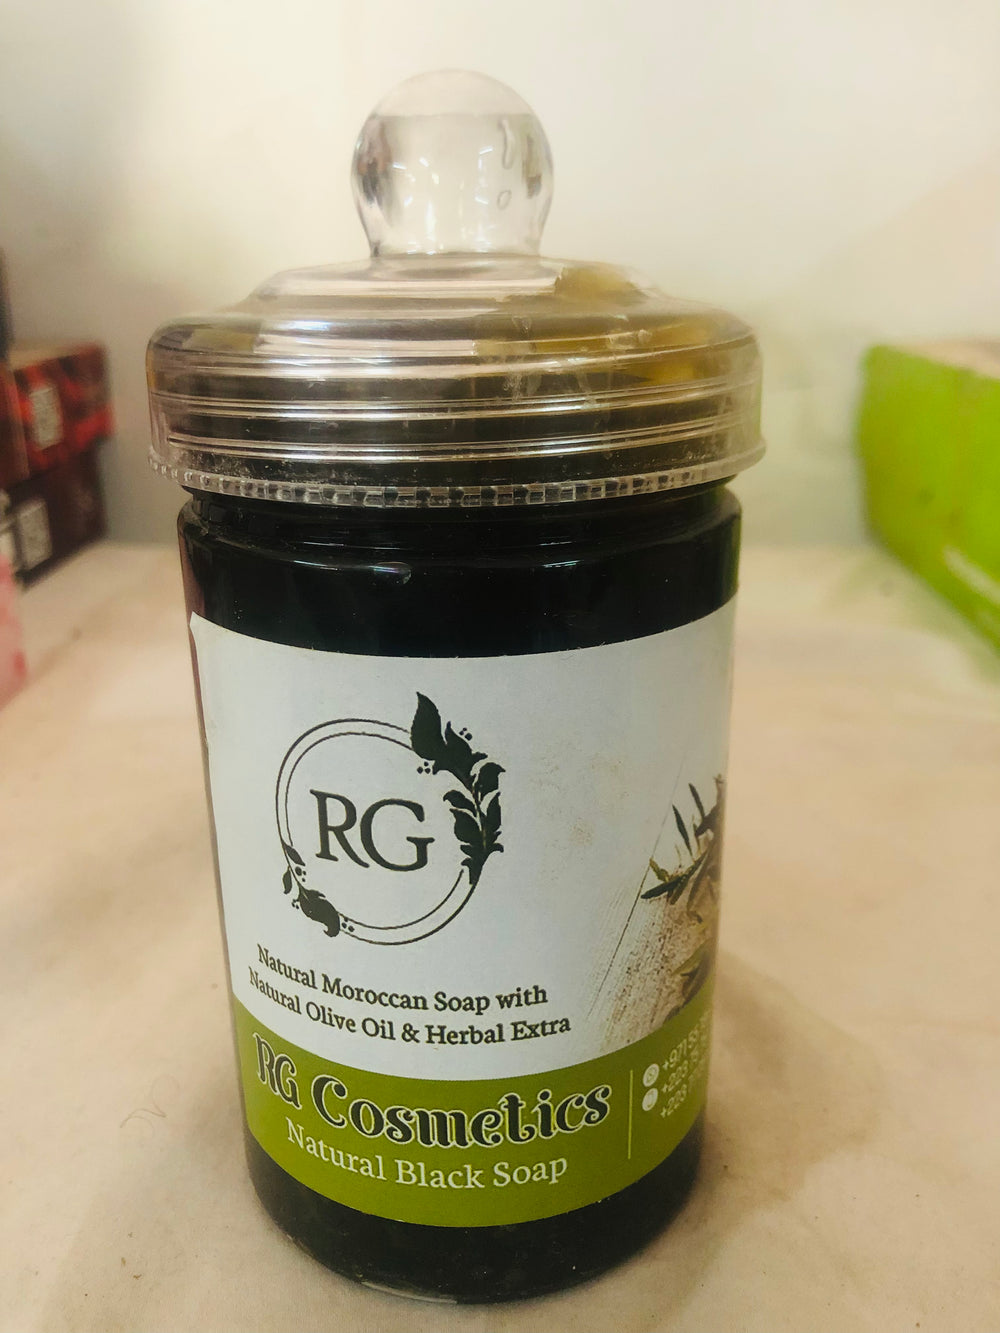 RG Cosmetics natural black soap